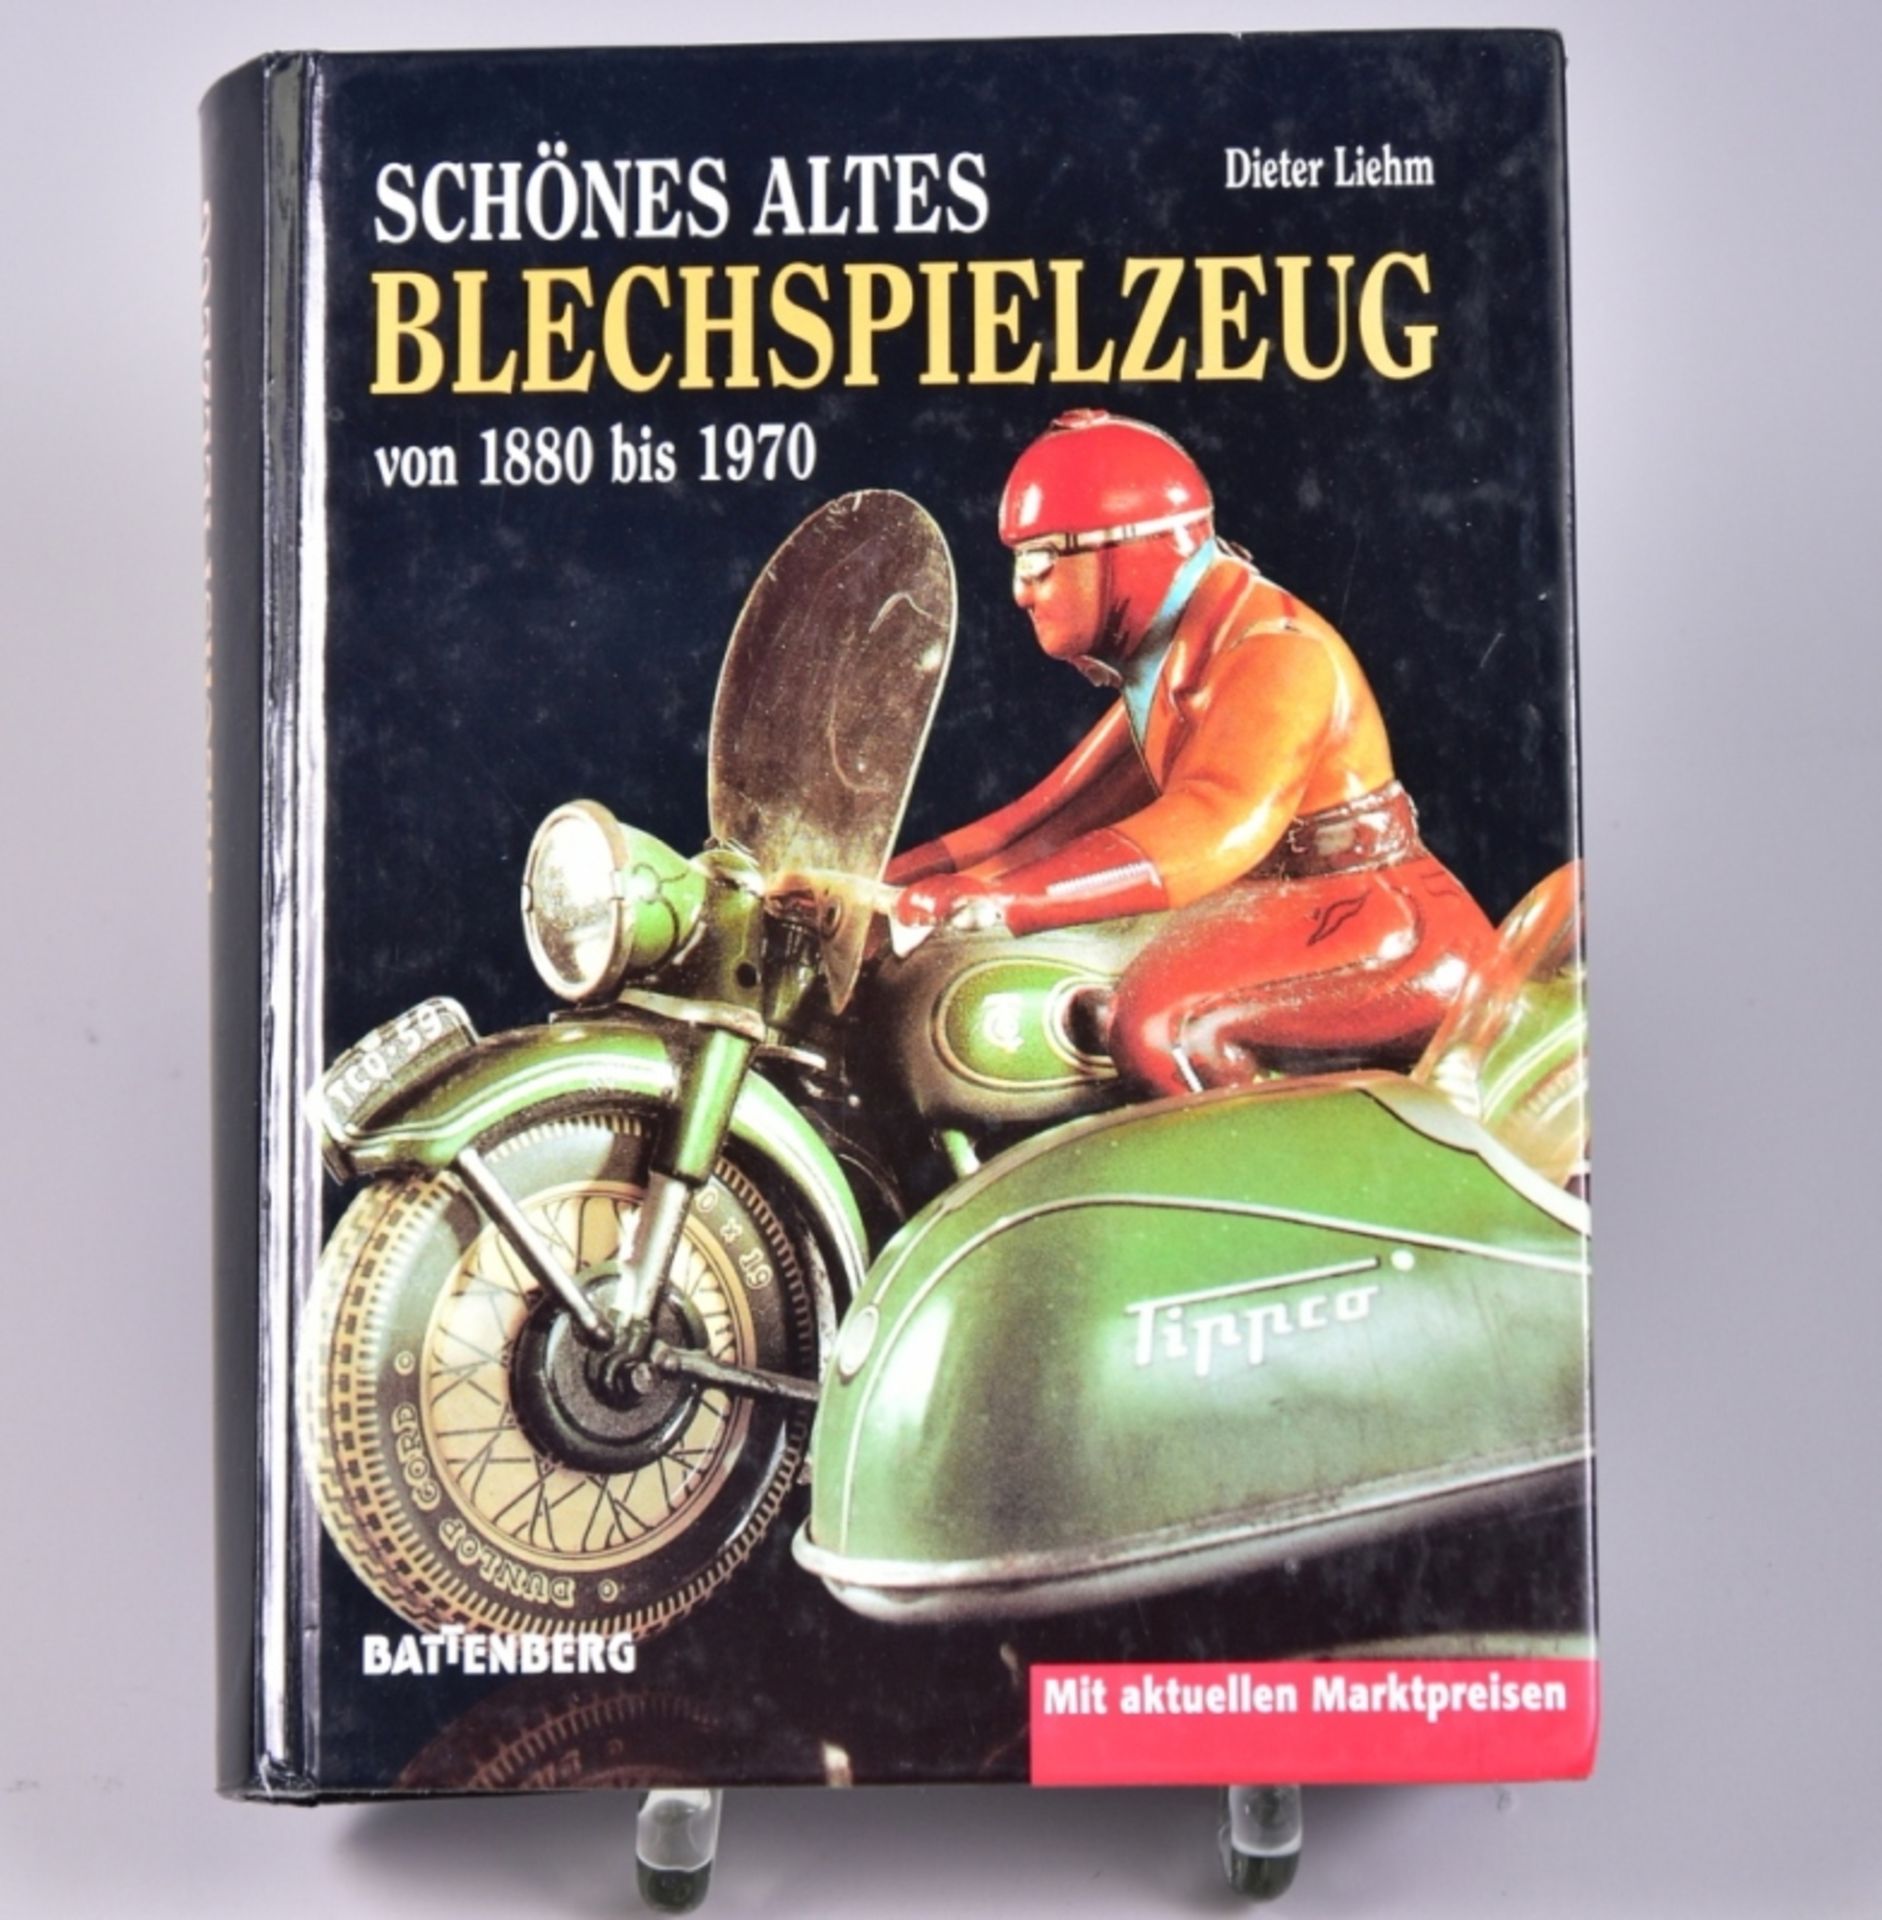 ,,Schönes altes Blechspielzeug", Battenberg Sammlerkatalog, Augsburg 1998, guter Zustand- - -23.00 %